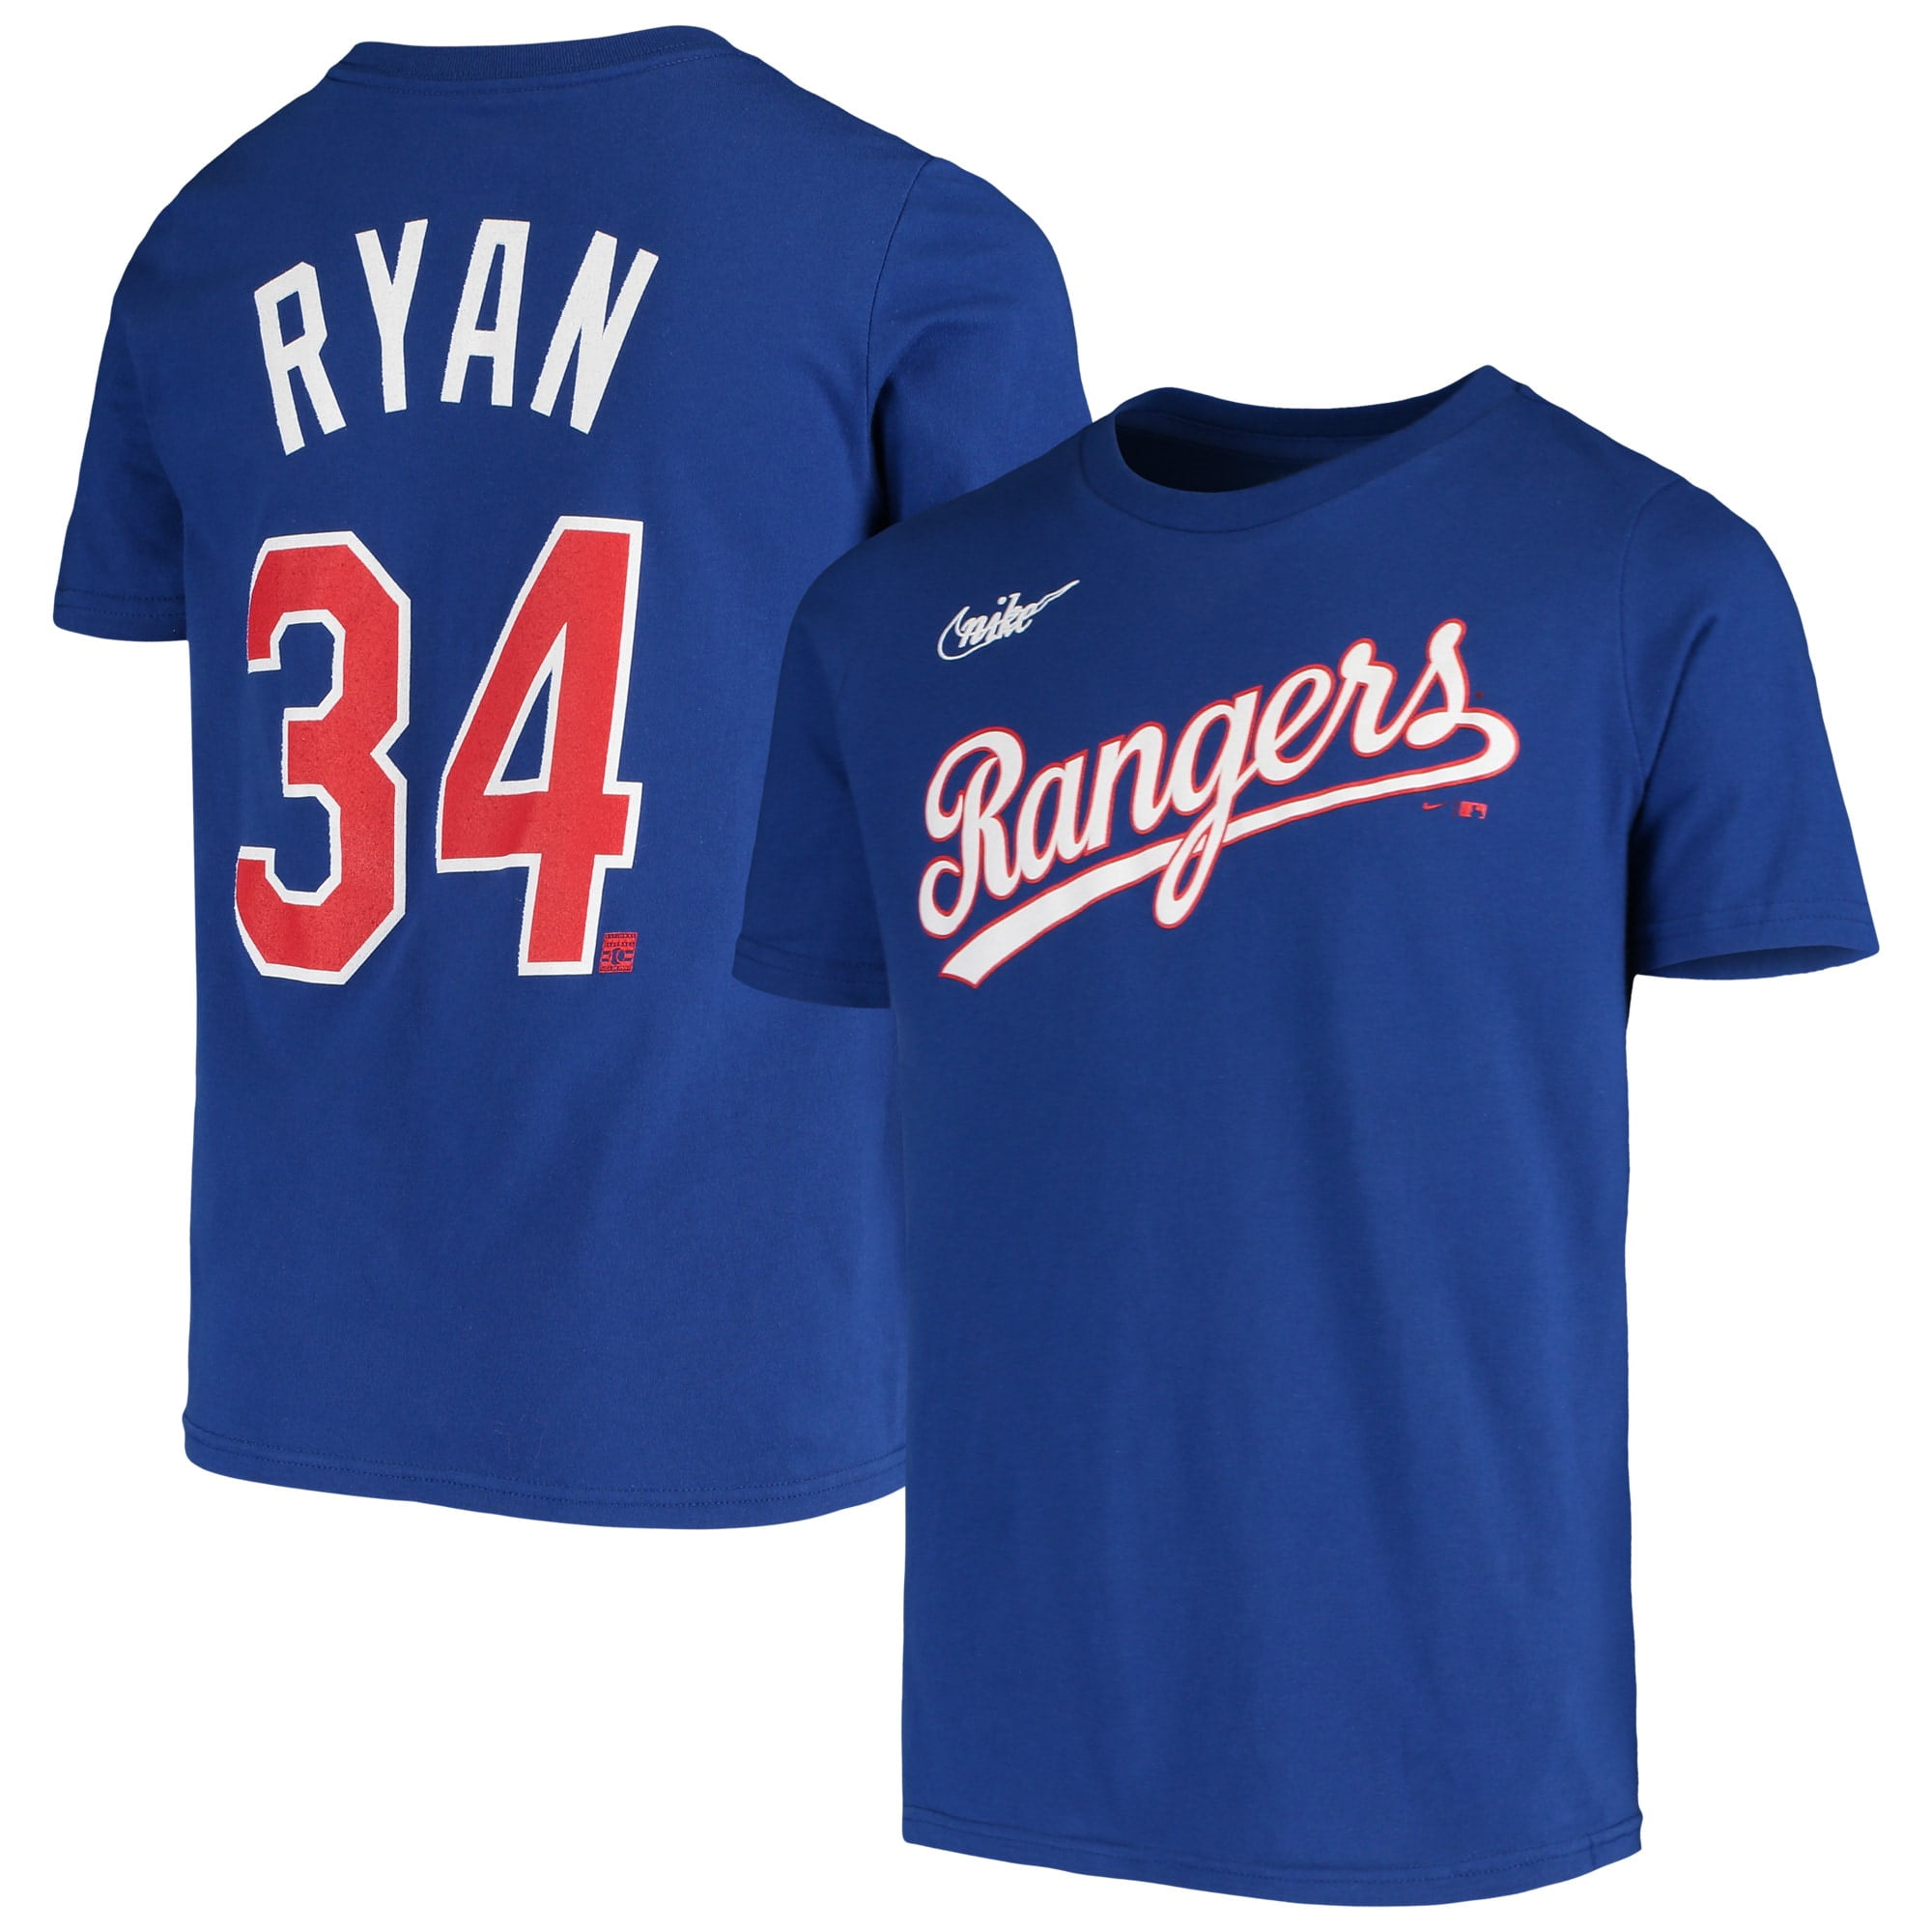 فريزر سامسونج Men's Nike Nolan Ryan Royal Texas Rangers Cooperstown Collection ... فريزر سامسونج